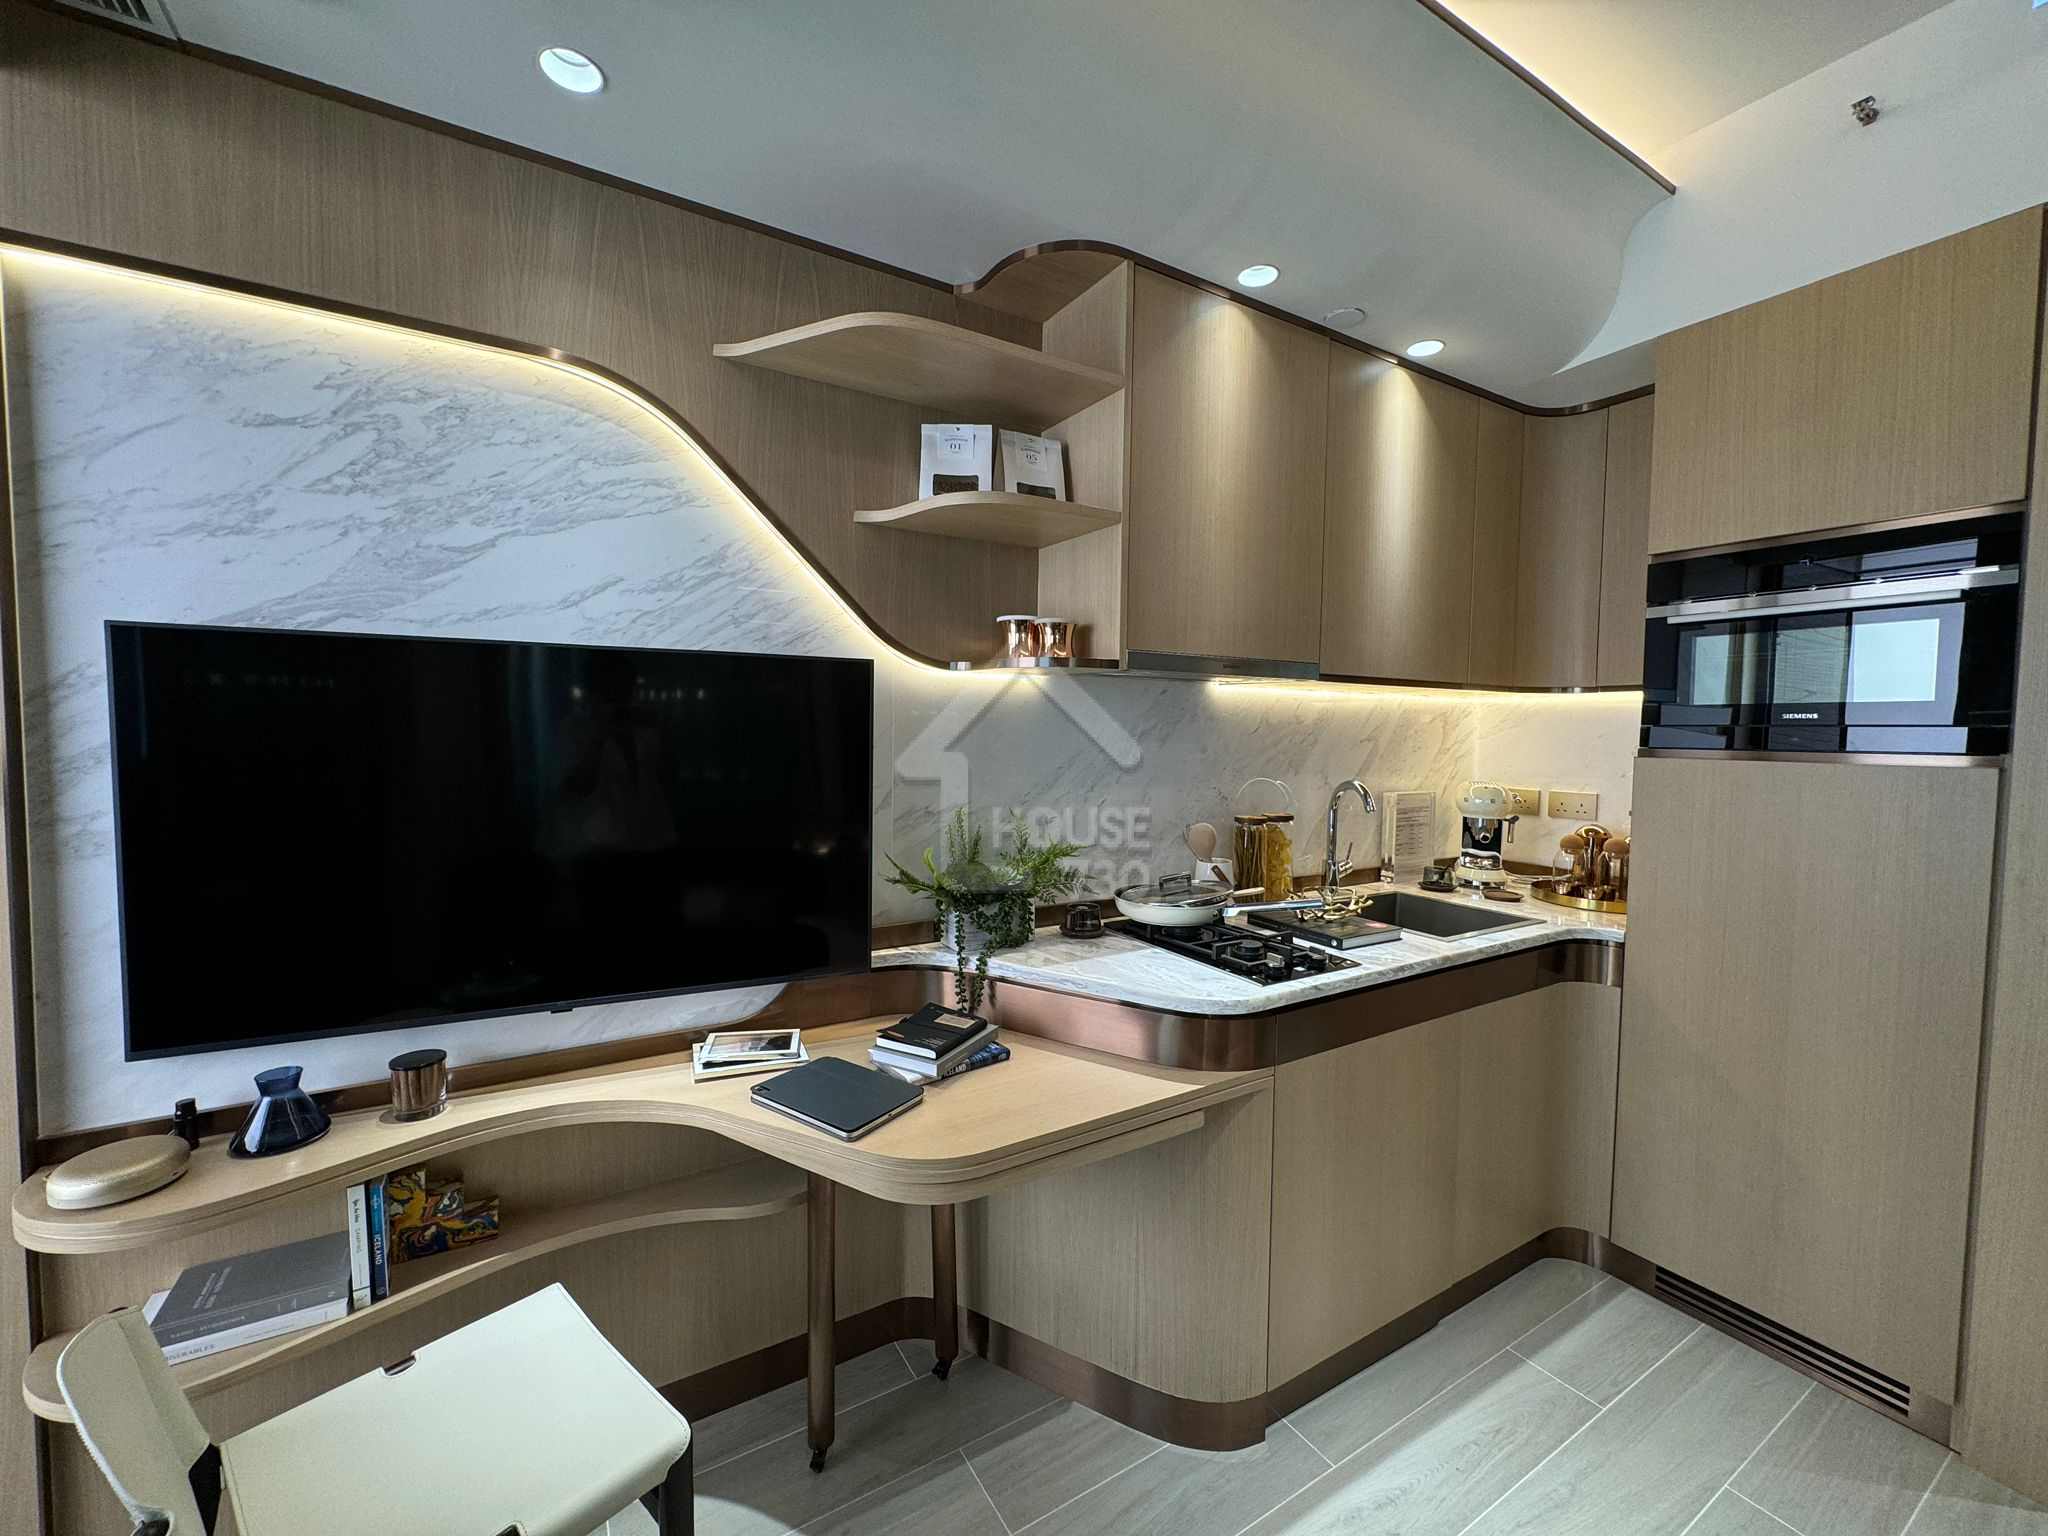 黃金海灣·意嵐經改動示範單位為第 5 座(5B)18 樓 N 單位開放式廚房。